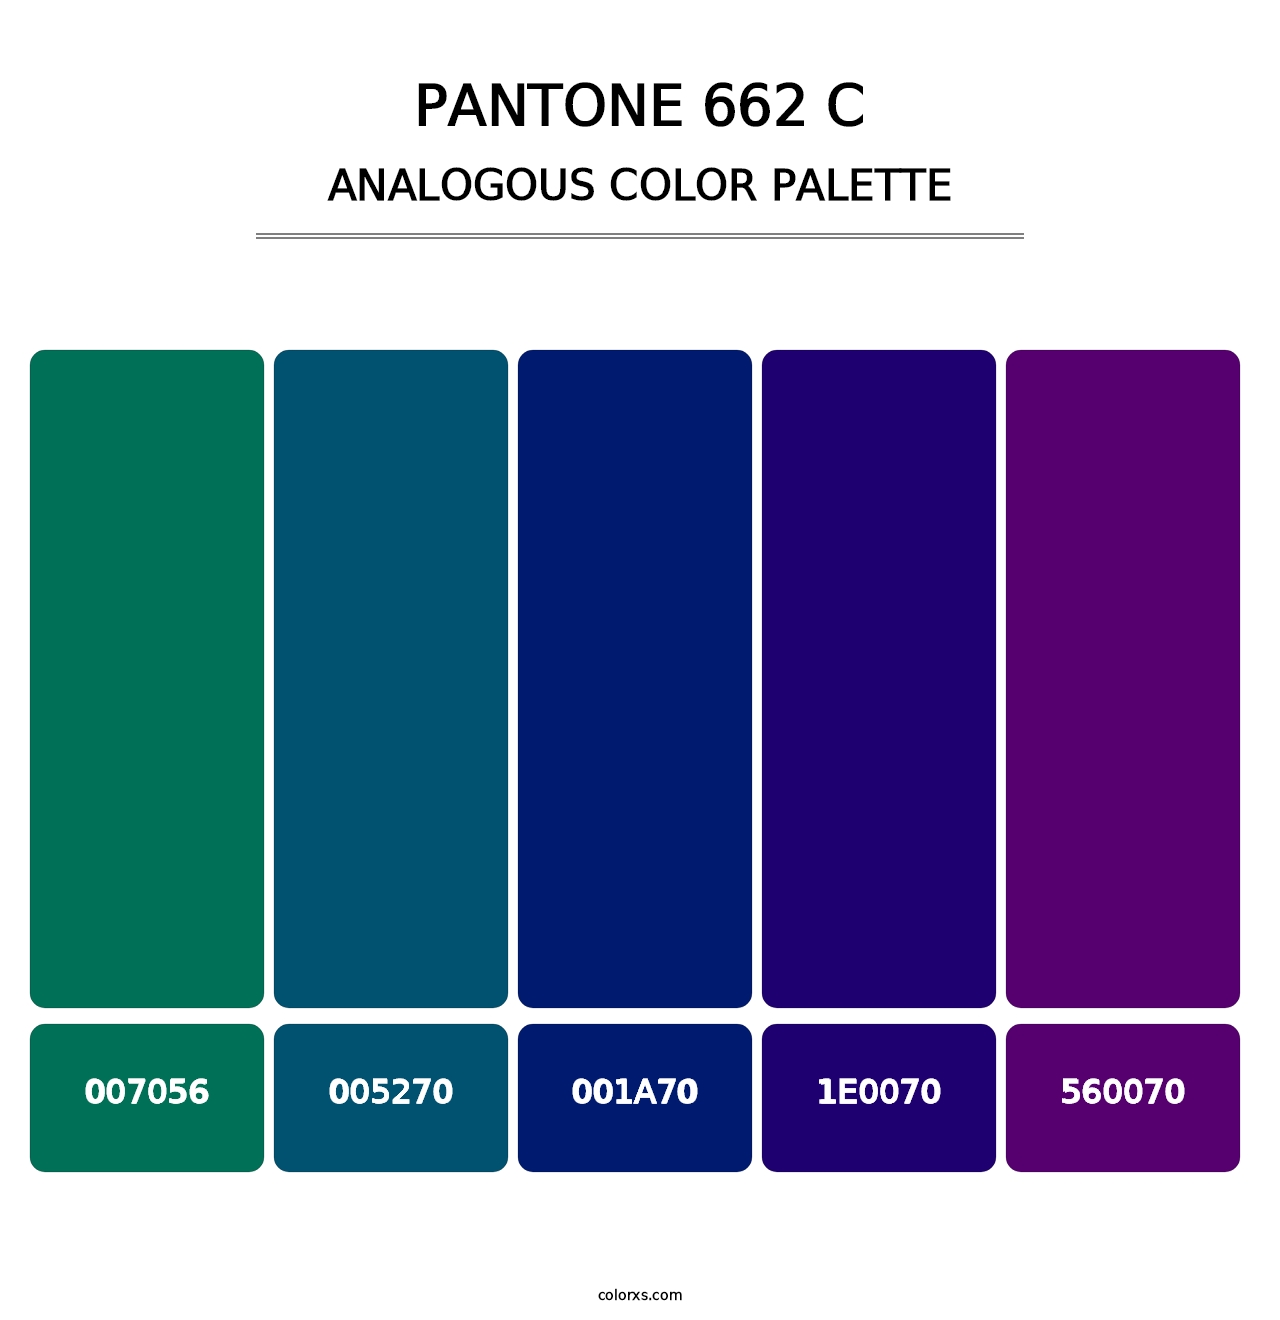 PANTONE 662 C - Analogous Color Palette